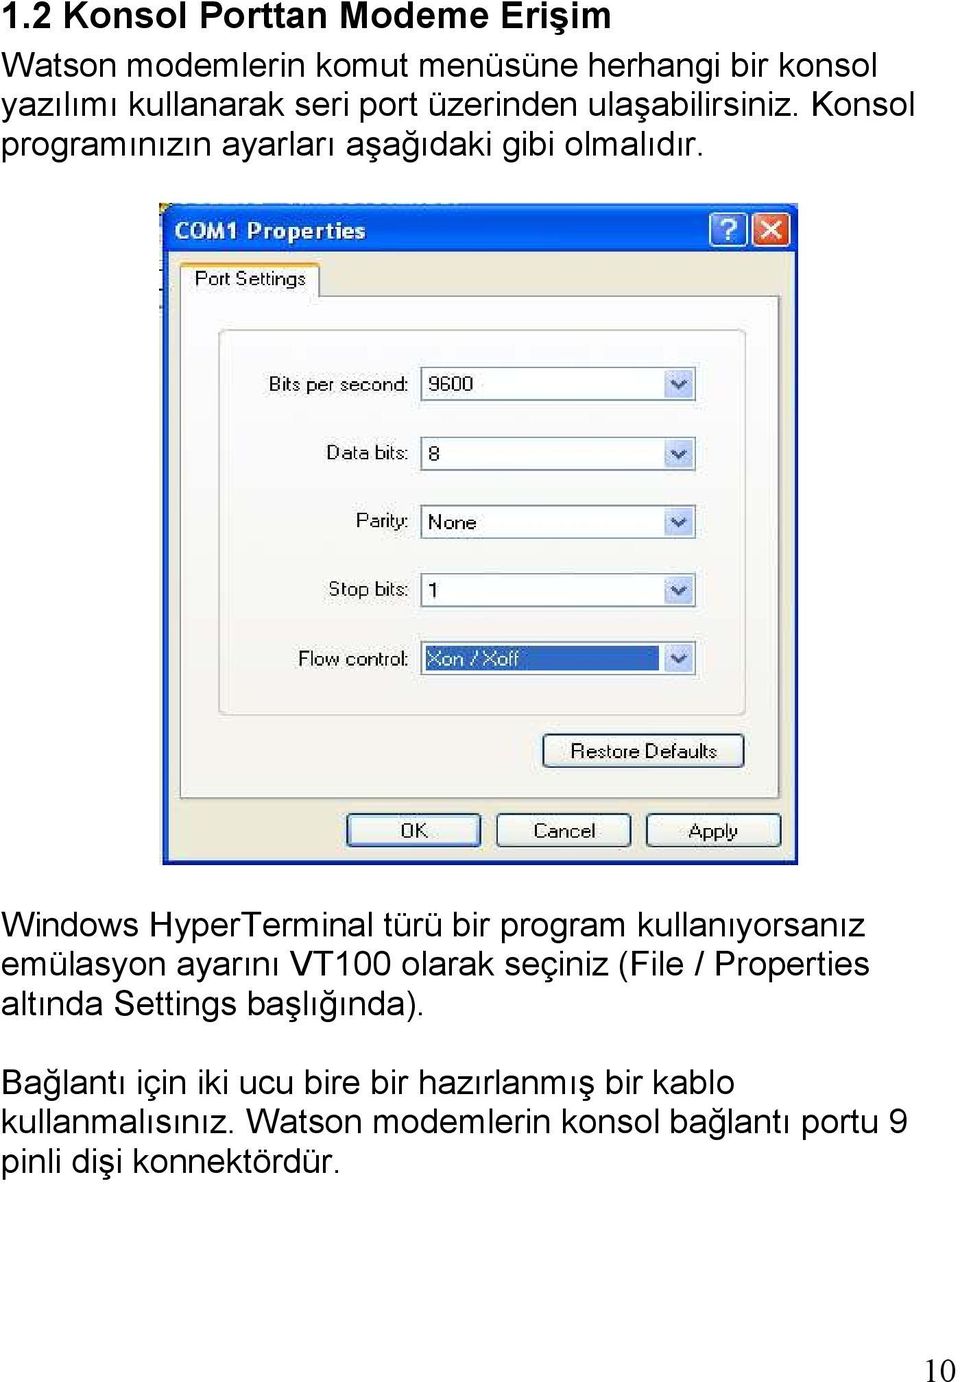 Windows HyperTerminal türü bir program kullanıyorsanız emülasyon ayarını VT100 olarak seçiniz (File / Properties altında